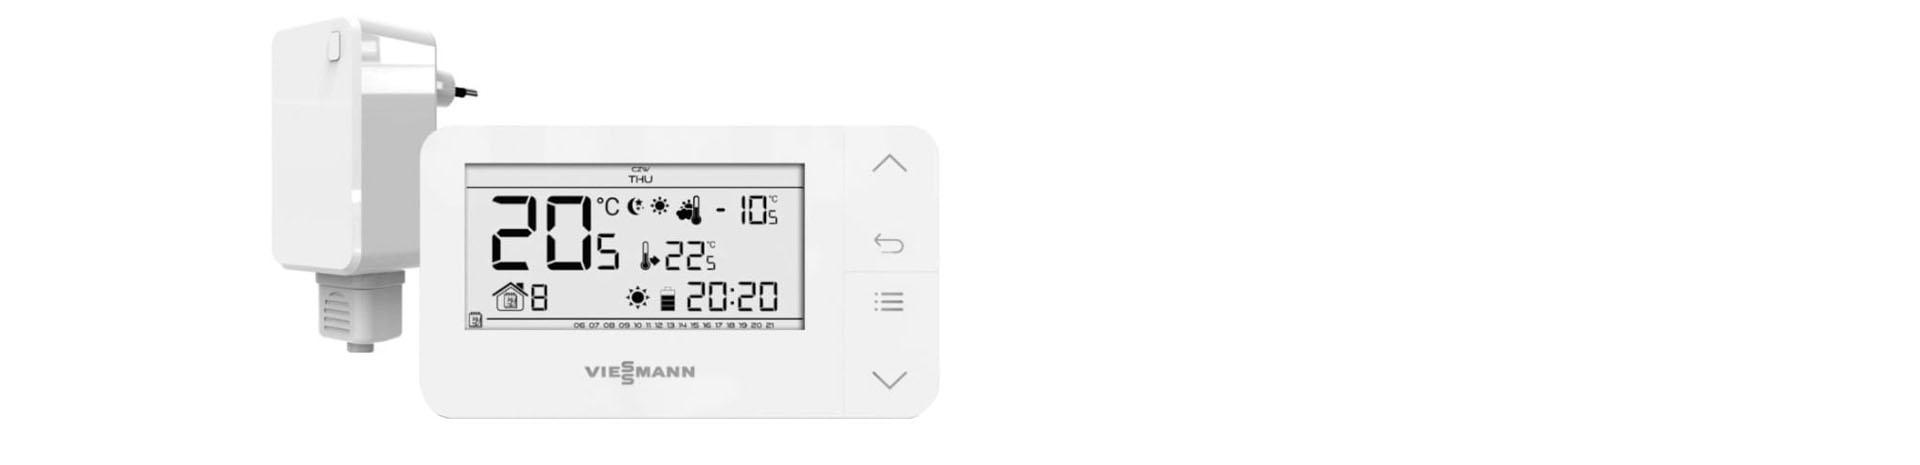 Slajd - 3 - termostat